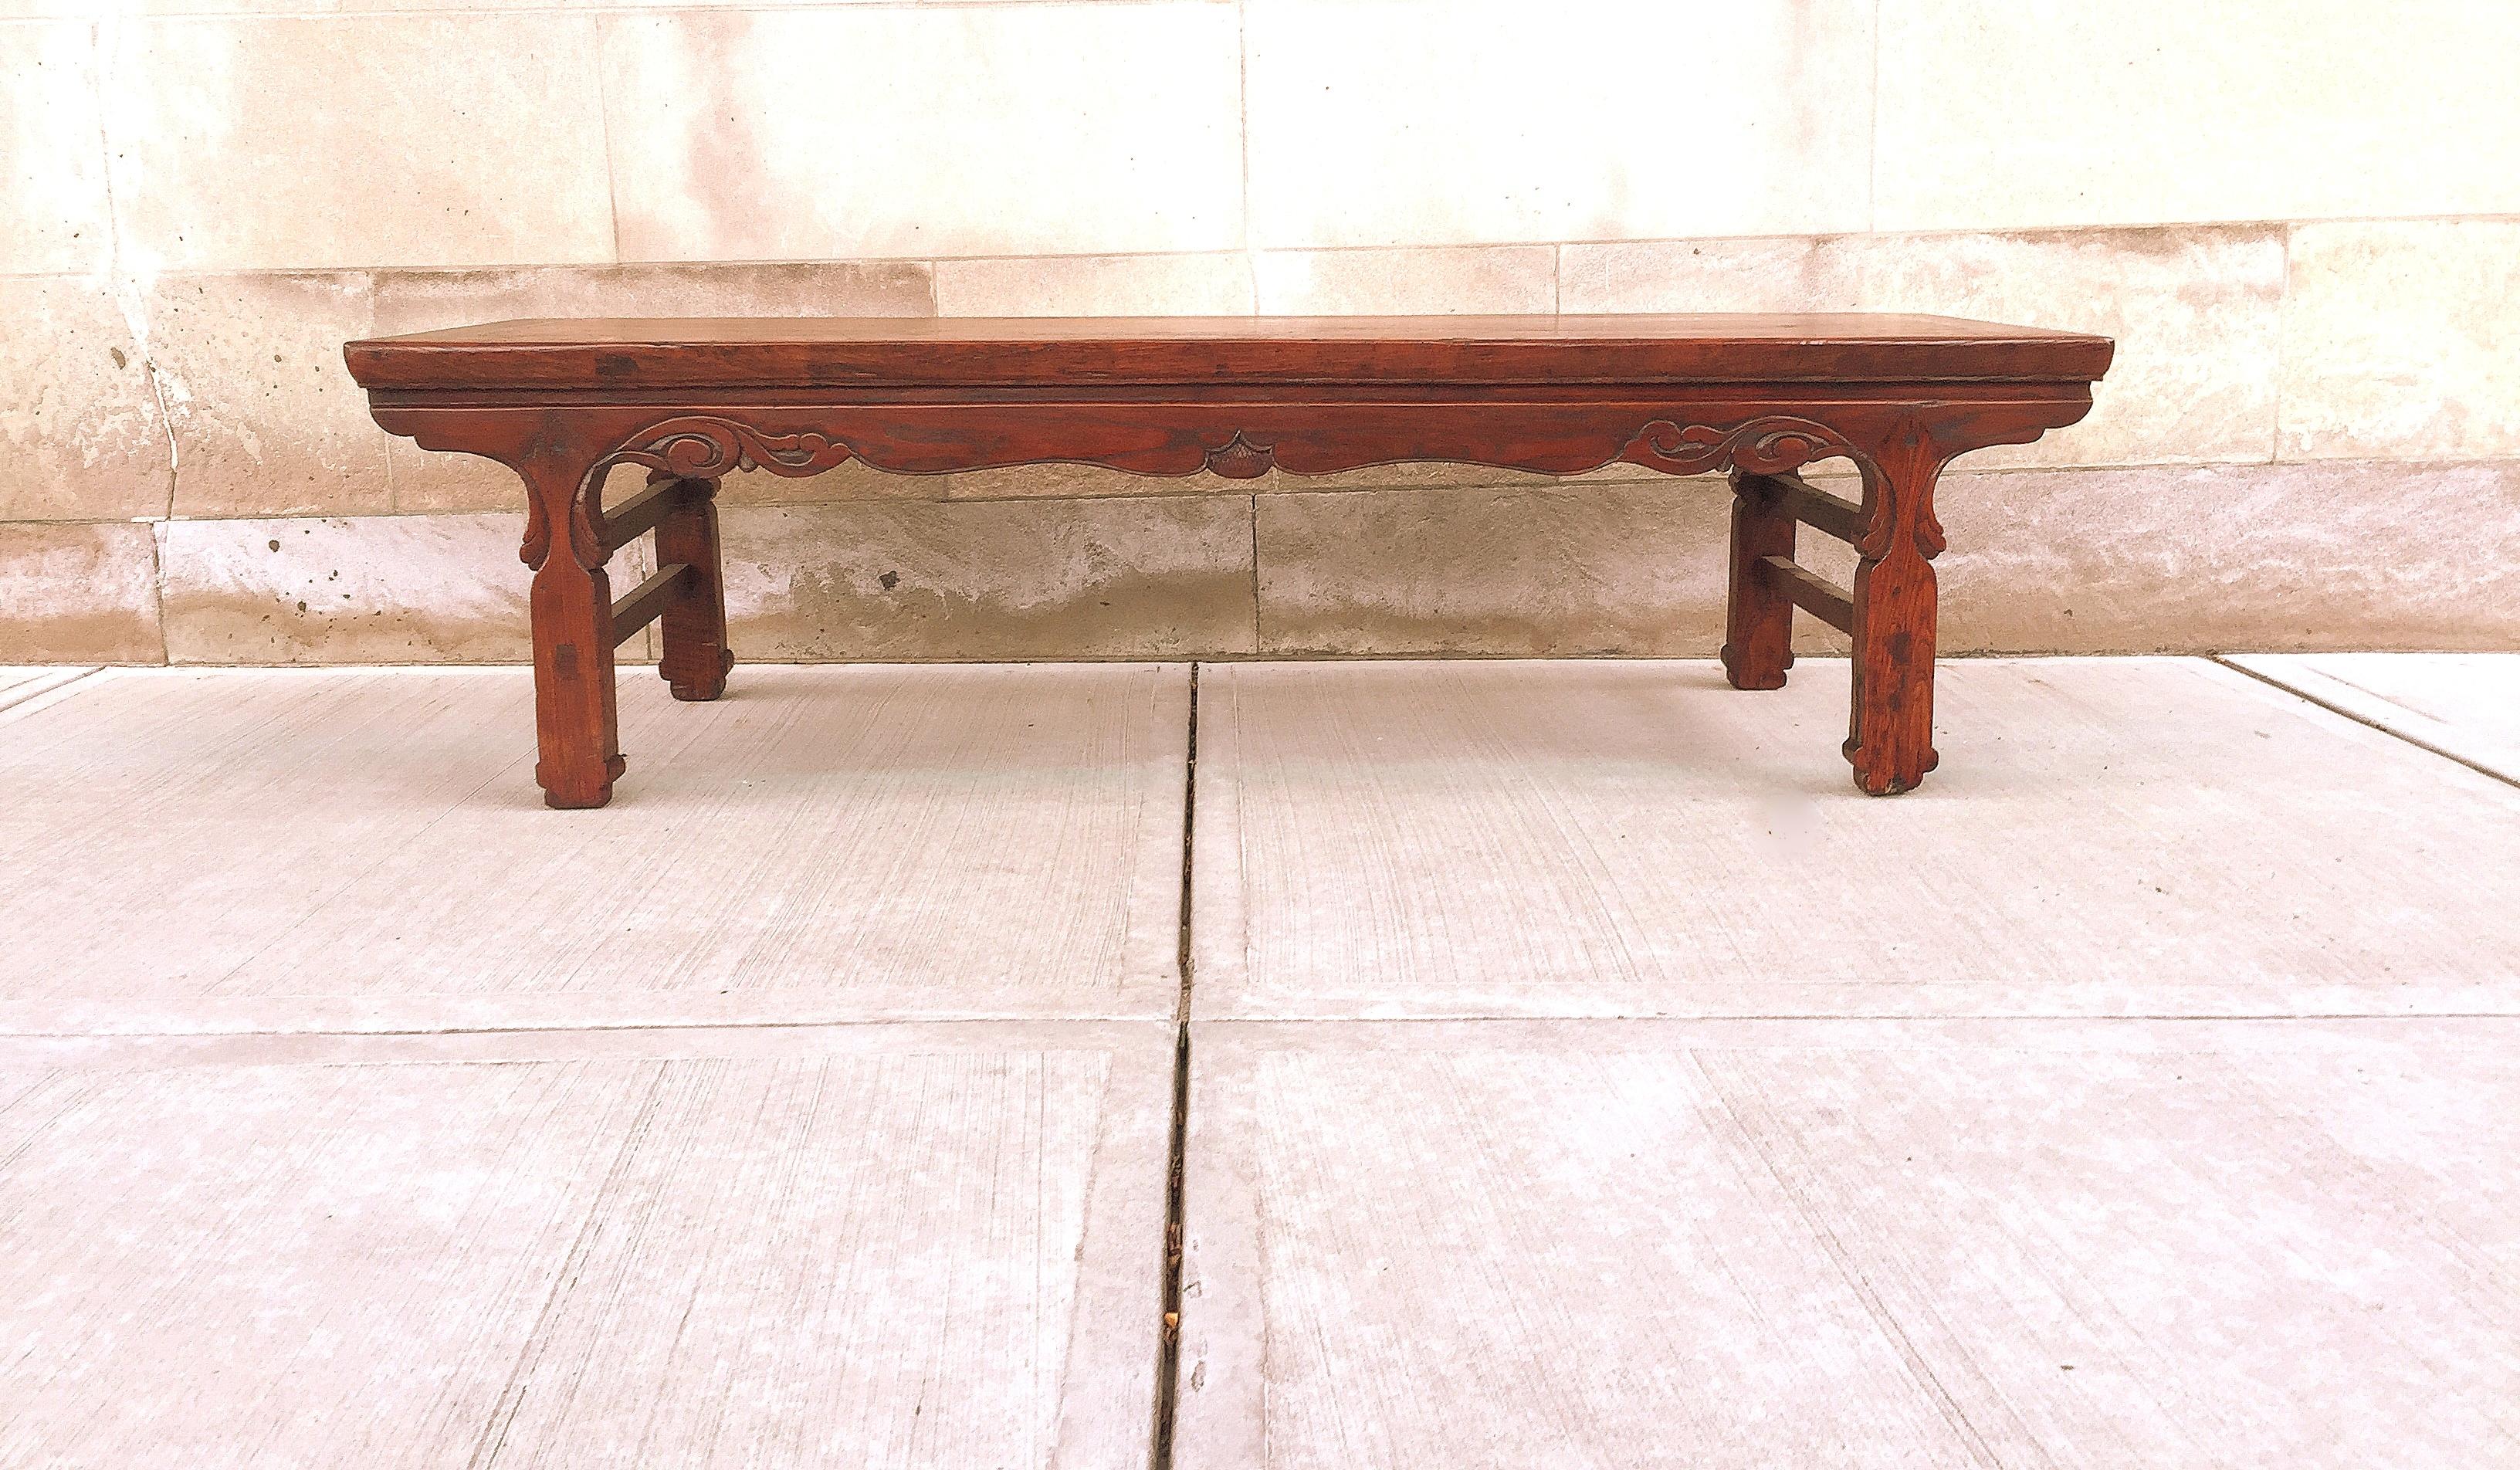 Table basse Kang en bois de Jumu, peut être utilisée comme grande table basse ou table d'appoint ou banc avec des sculptures en relief sur les tabliers.
La table est très solide et peut être utilisée comme siège, table basse et autres fonctions.